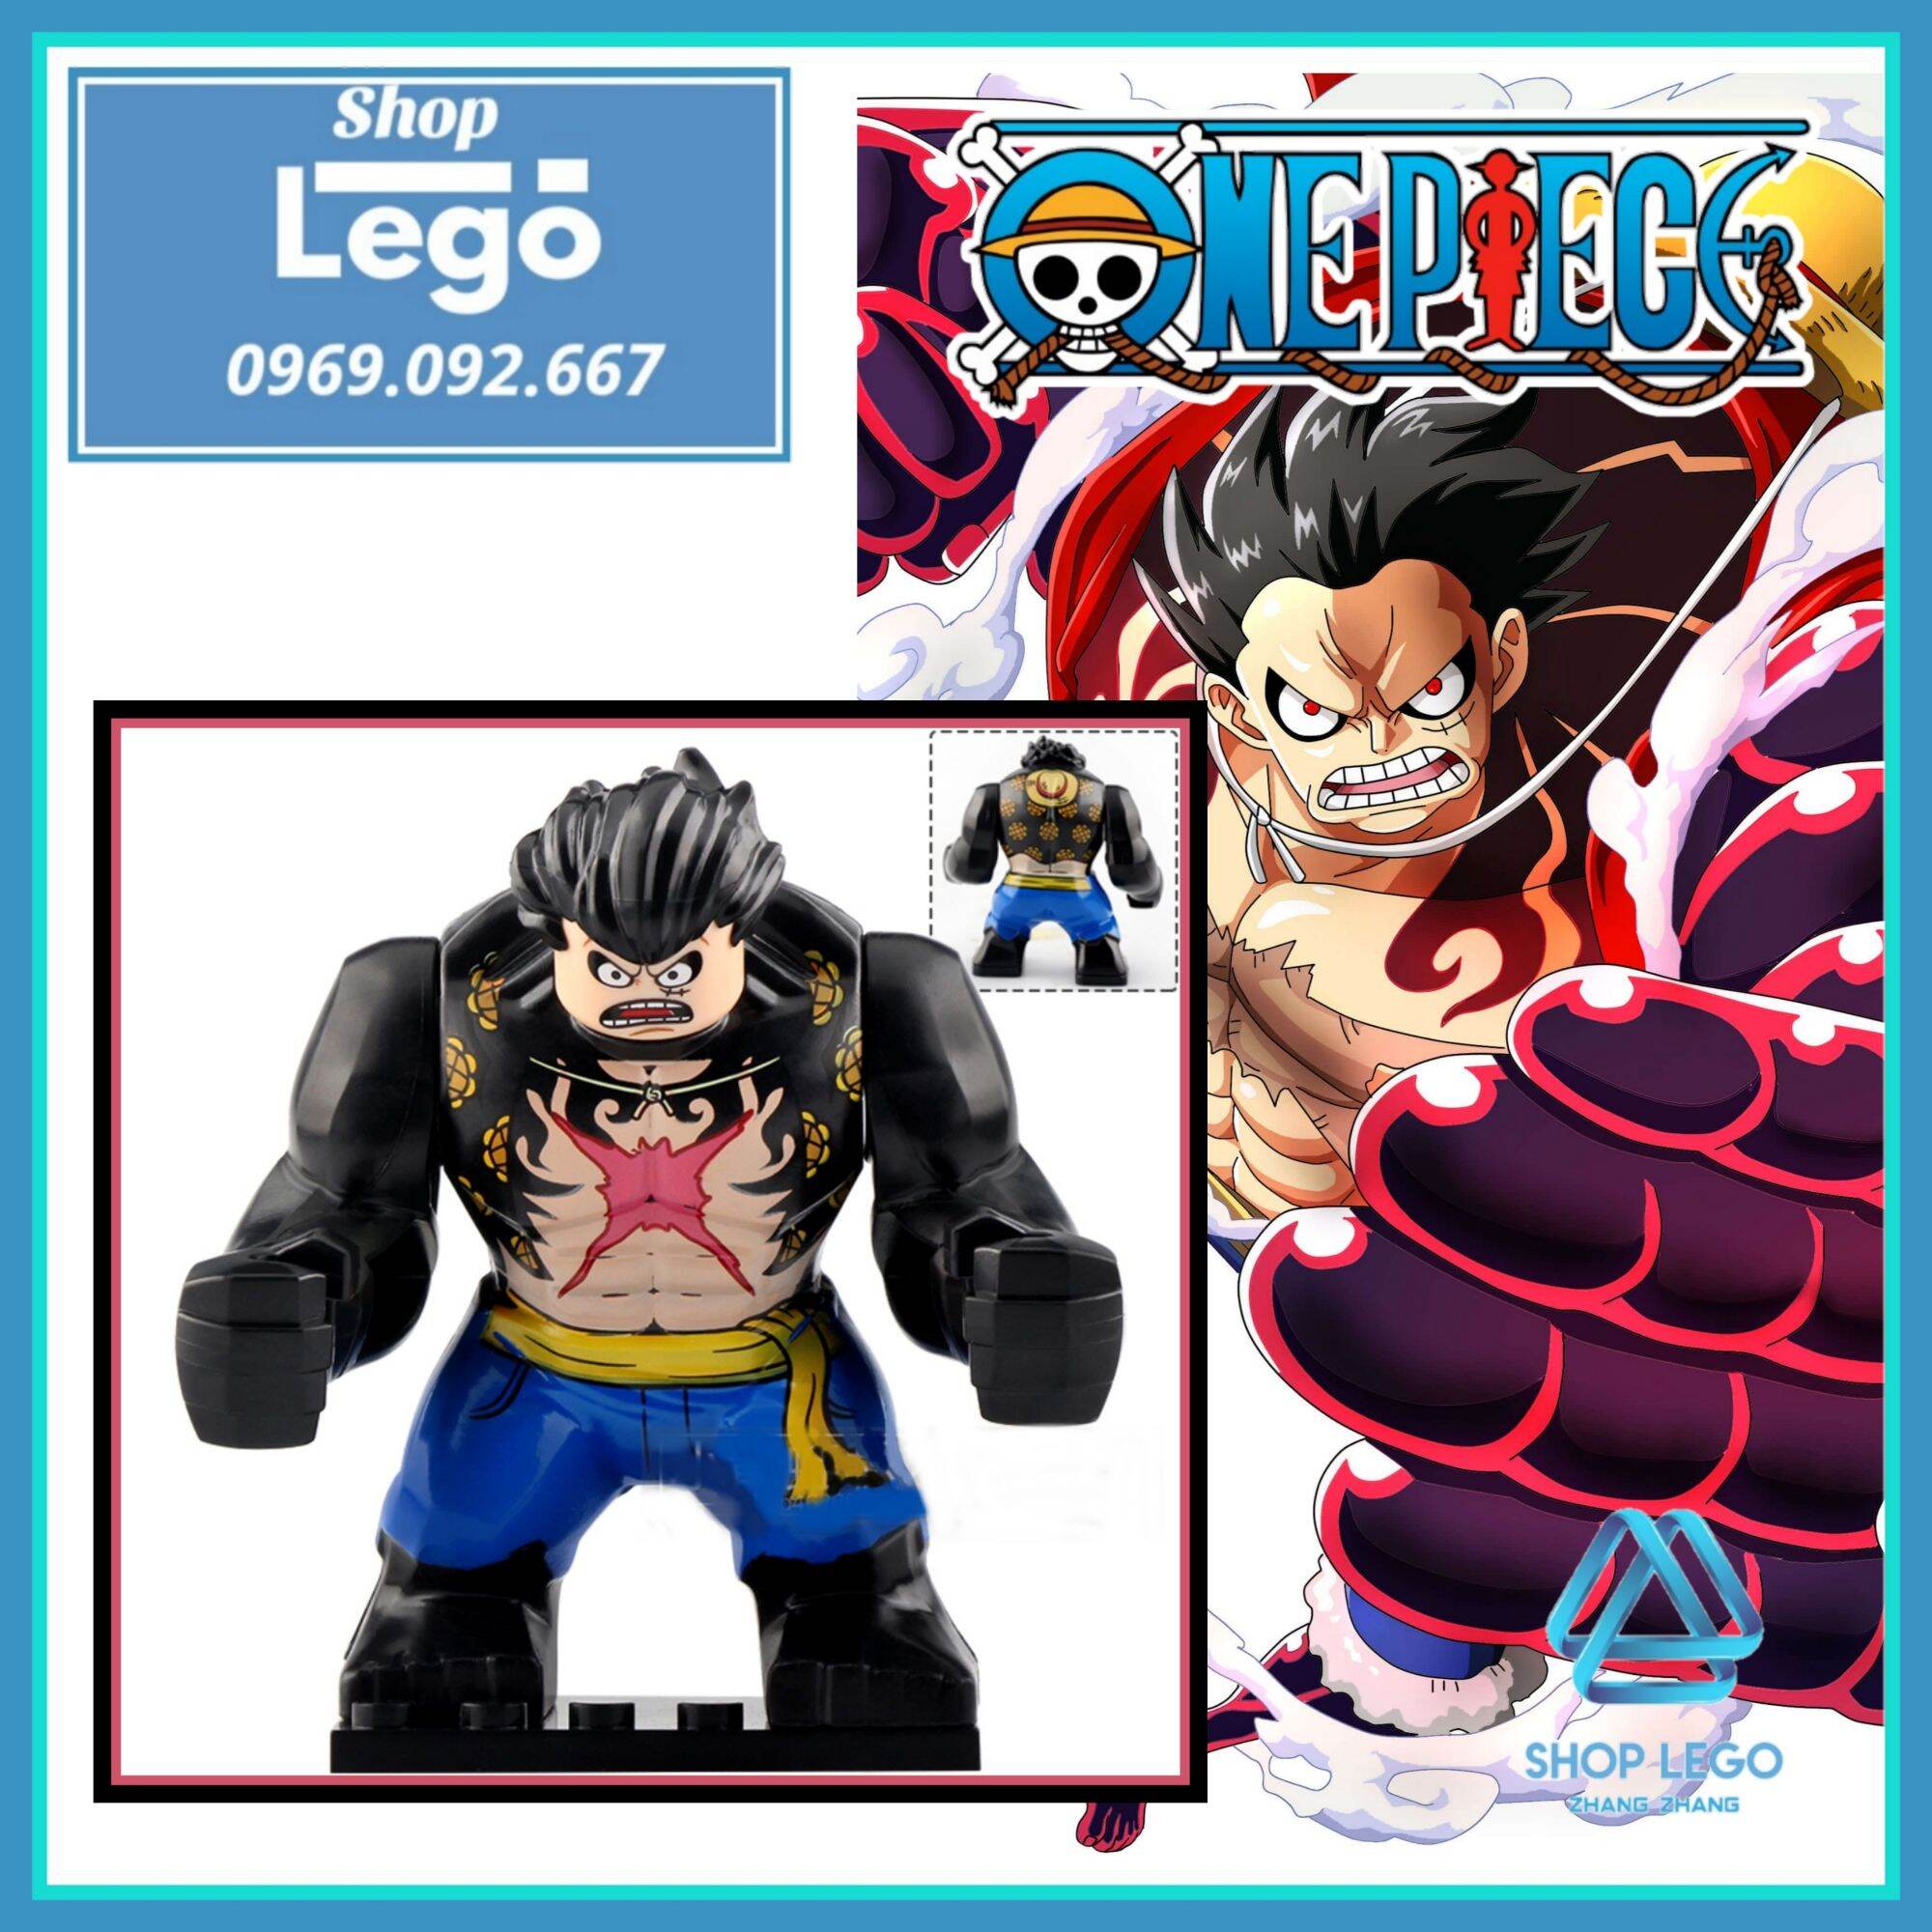 Luffy Gear 4 Tank Man là một trong những hình ảnh kinh điển trong One Piece! Hãy chiêm ngưỡng trọn vẹn sức mạnh của Luffy khi anh ta biến hình và trở thành một tảng đá khổng lồ có thể hạ gục kẻ thù một cách dễ dàng!